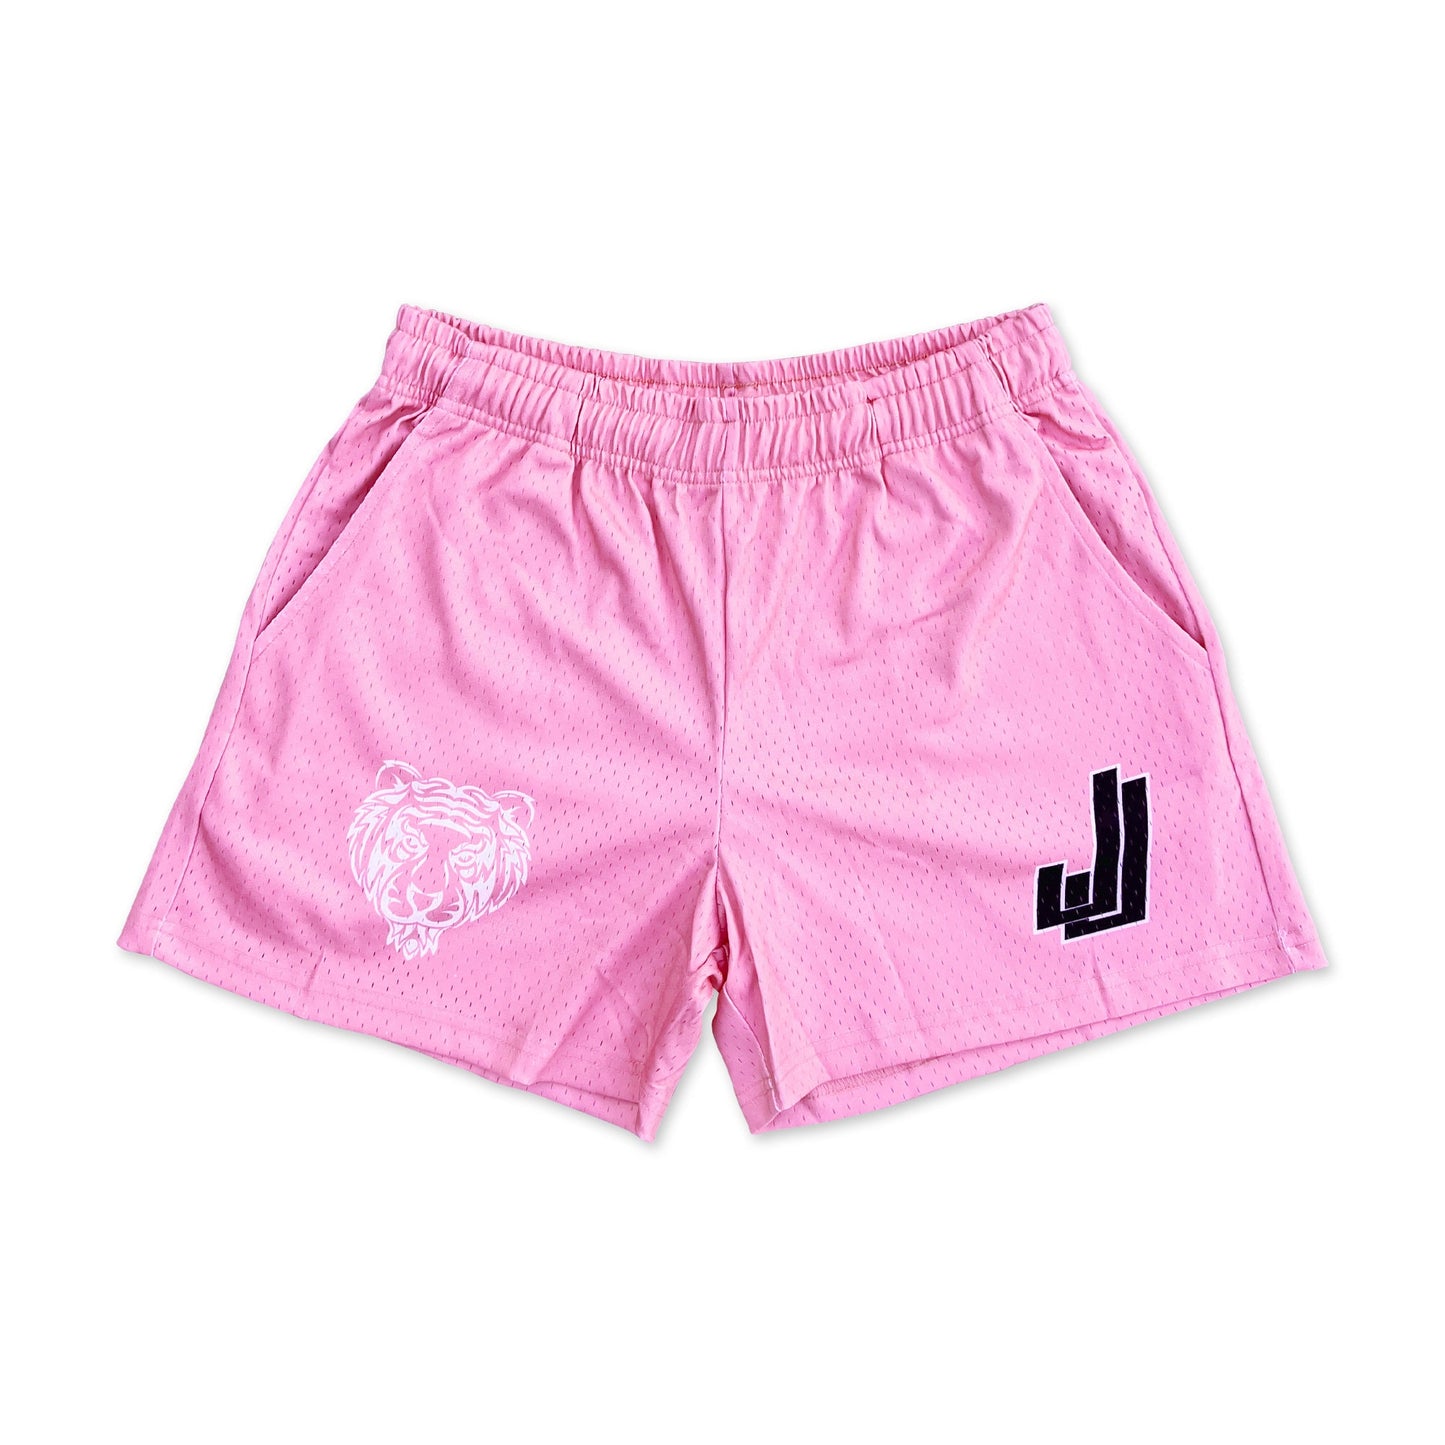 Pop Pink Core Gym Shorts (5&7 Inseam)